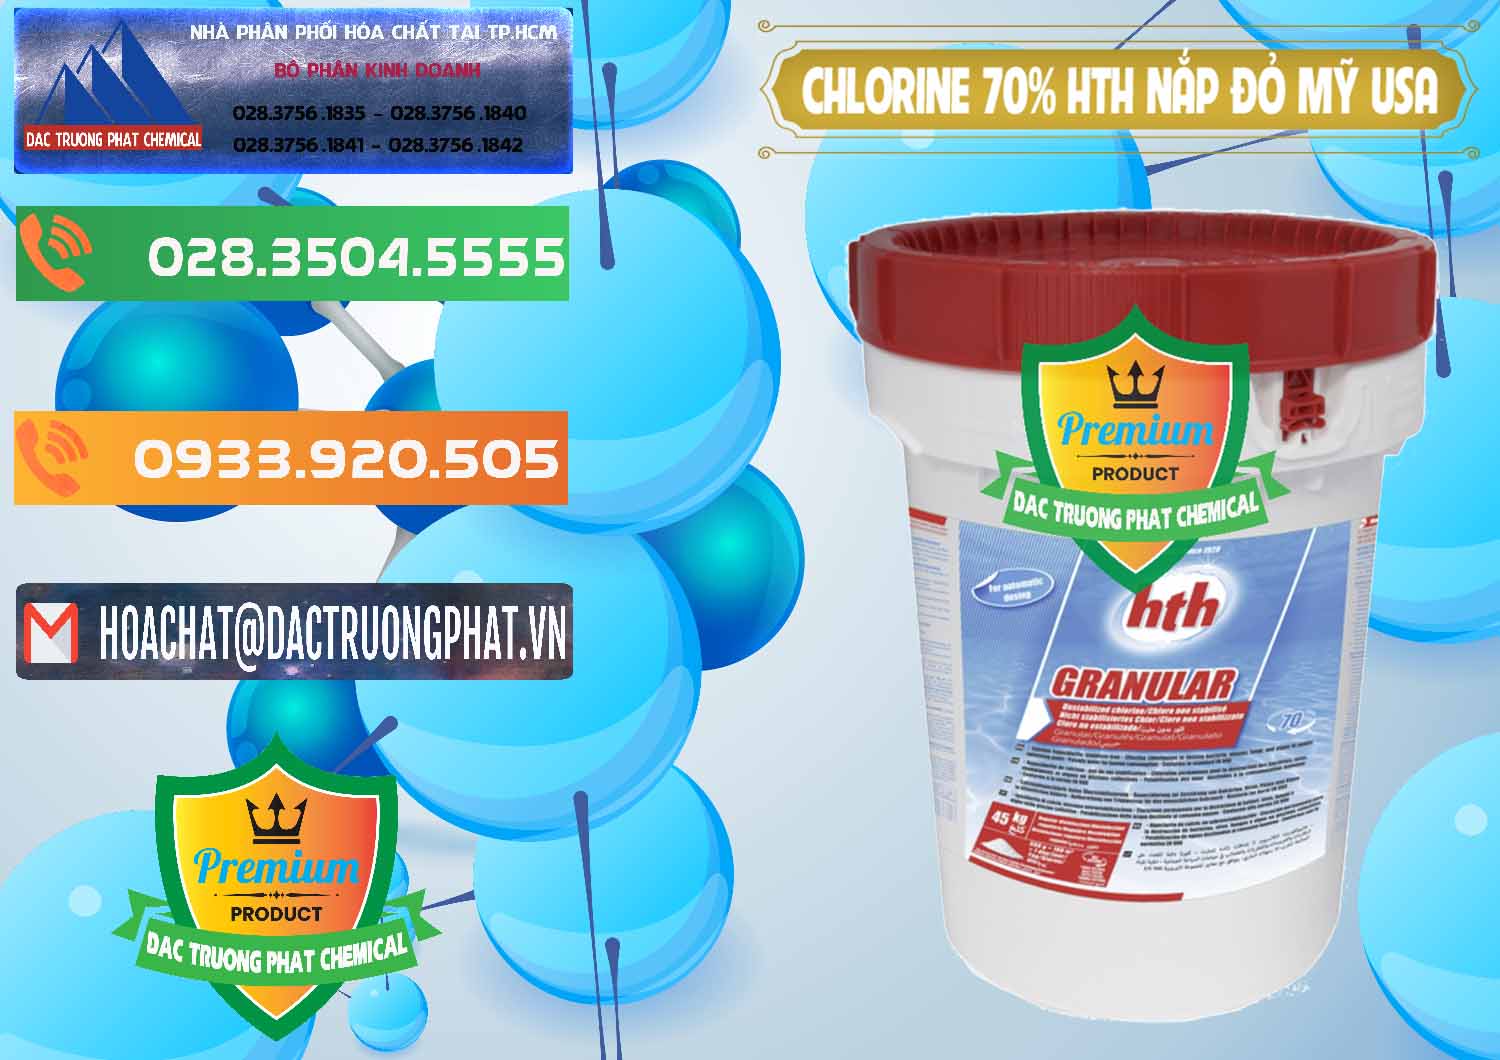 Cty chuyên phân phối - bán Clorin – Chlorine 70% HTH Nắp Đỏ Mỹ Usa - 0244 - Đơn vị chuyên cung cấp _ kinh doanh hóa chất tại TP.HCM - hoachatxulynuoc.com.vn